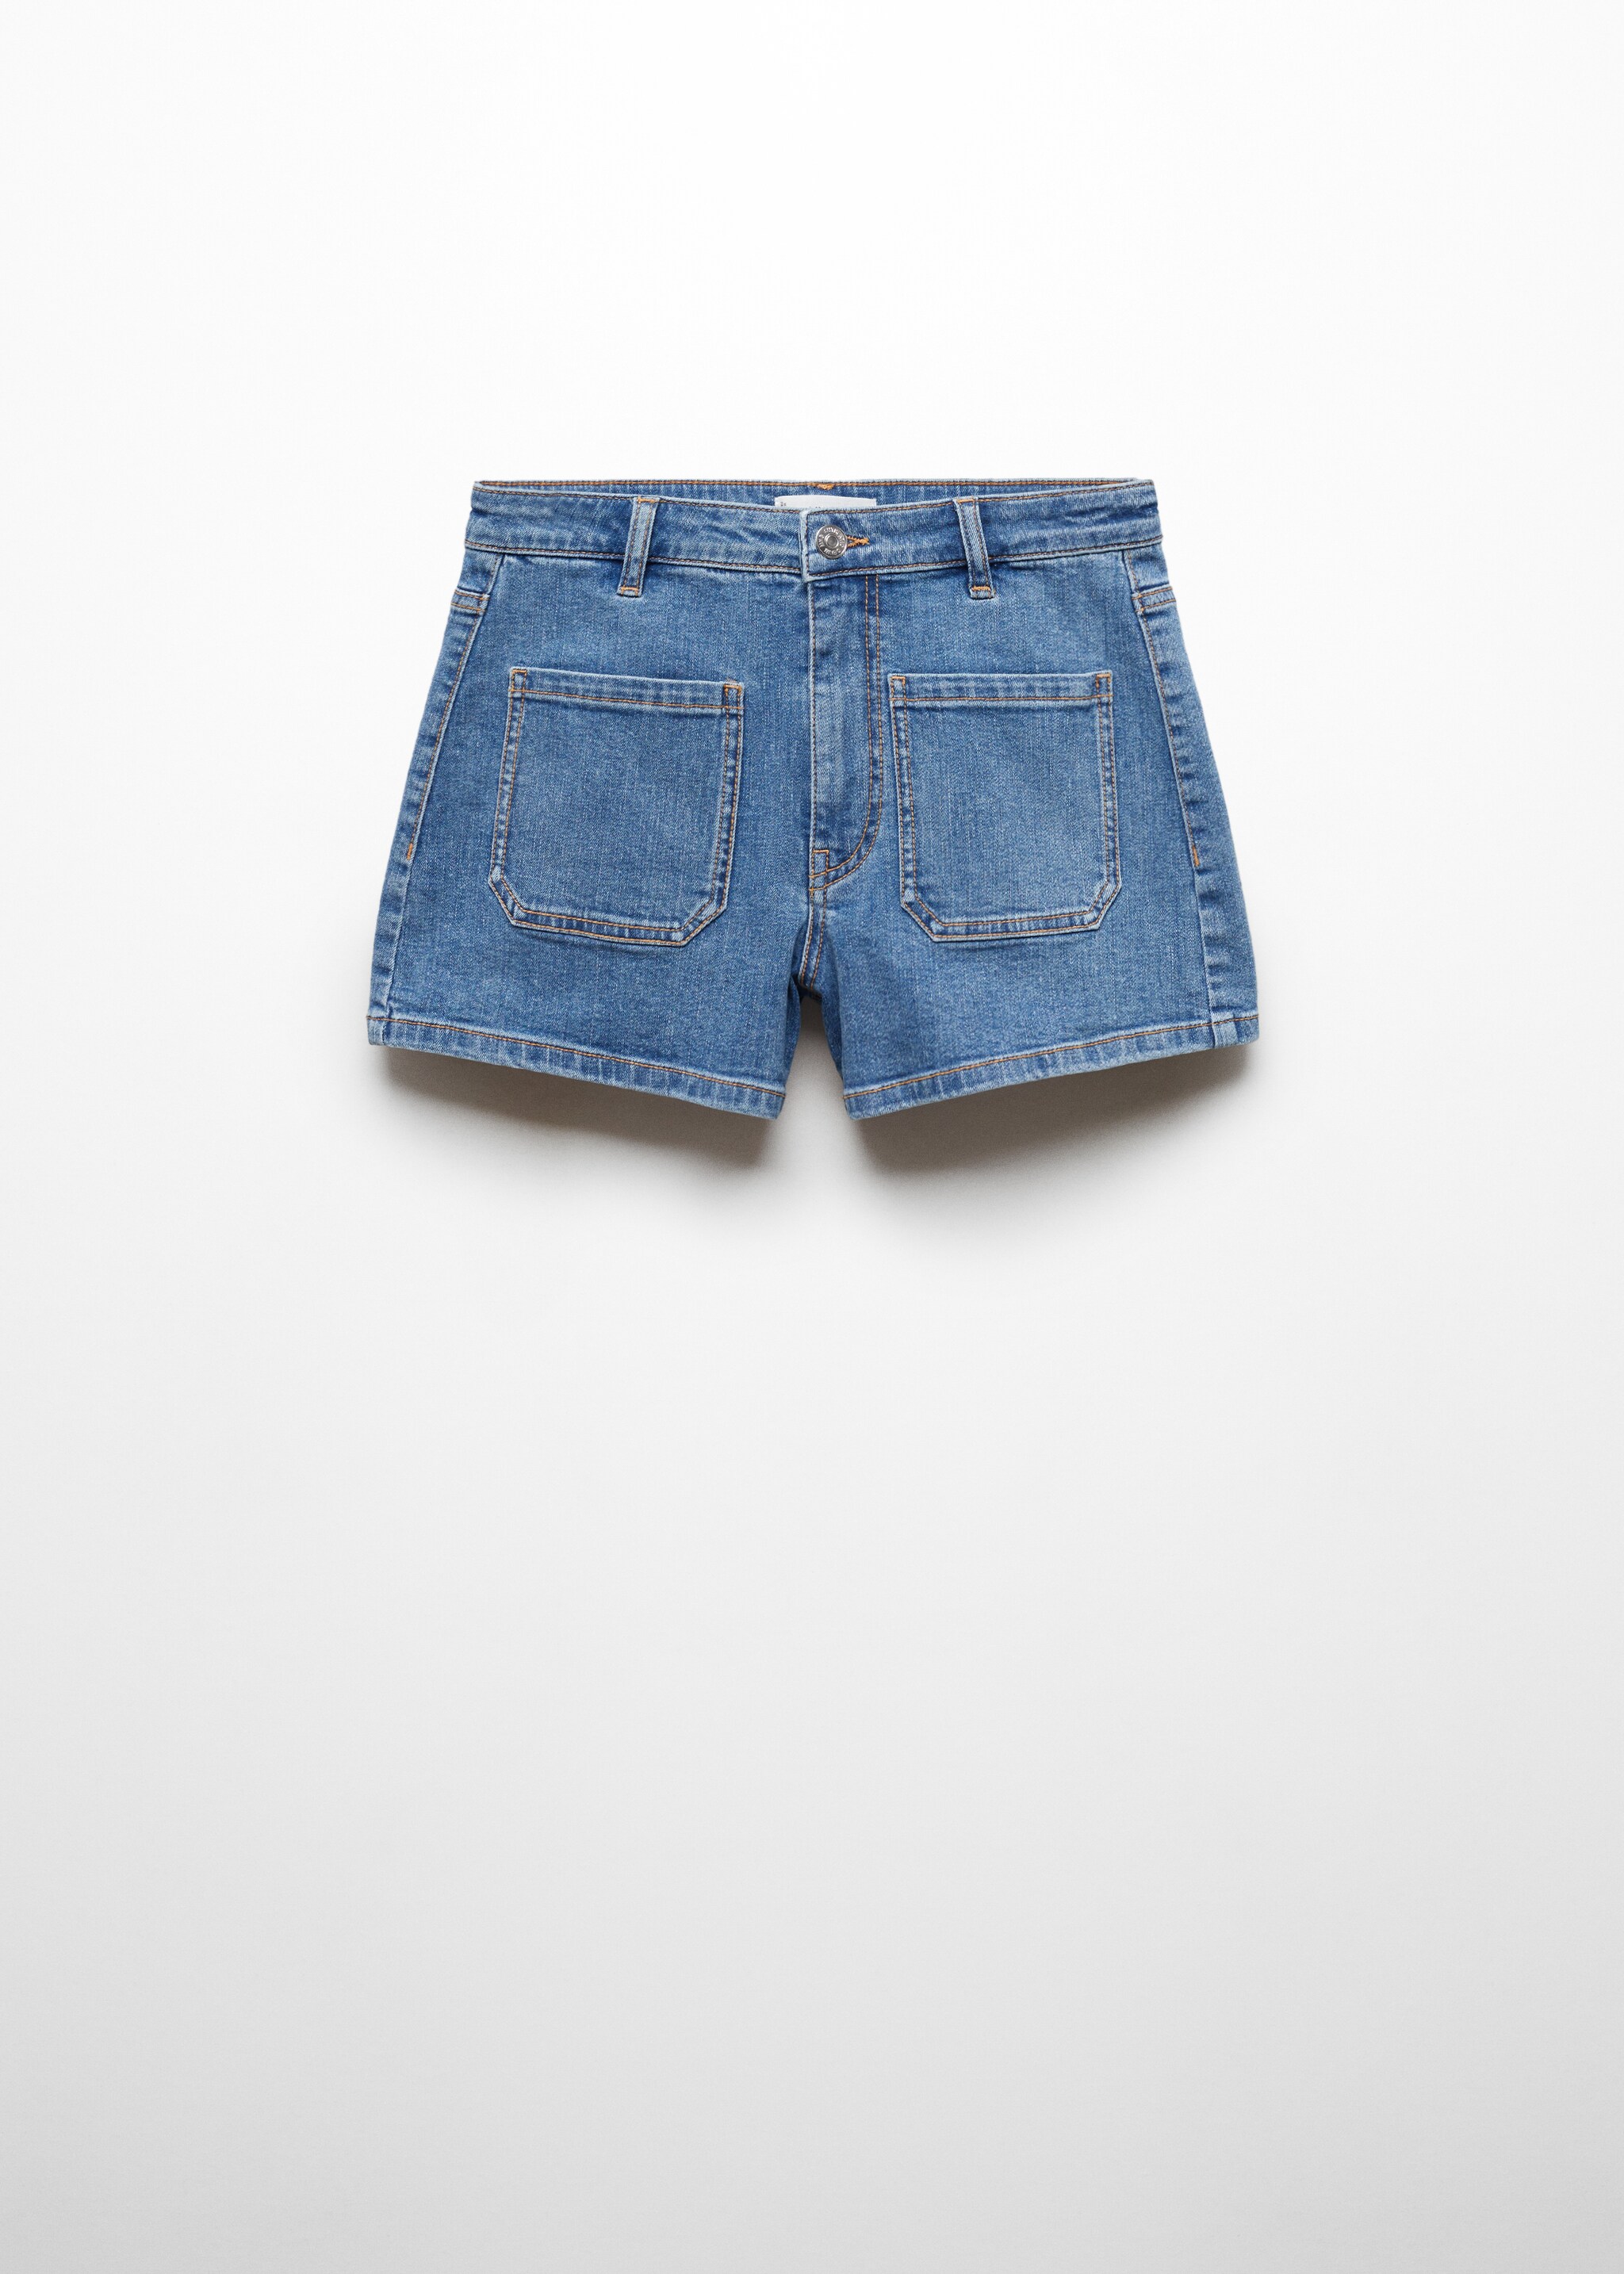 Shorts texans butxaques - Article sense model